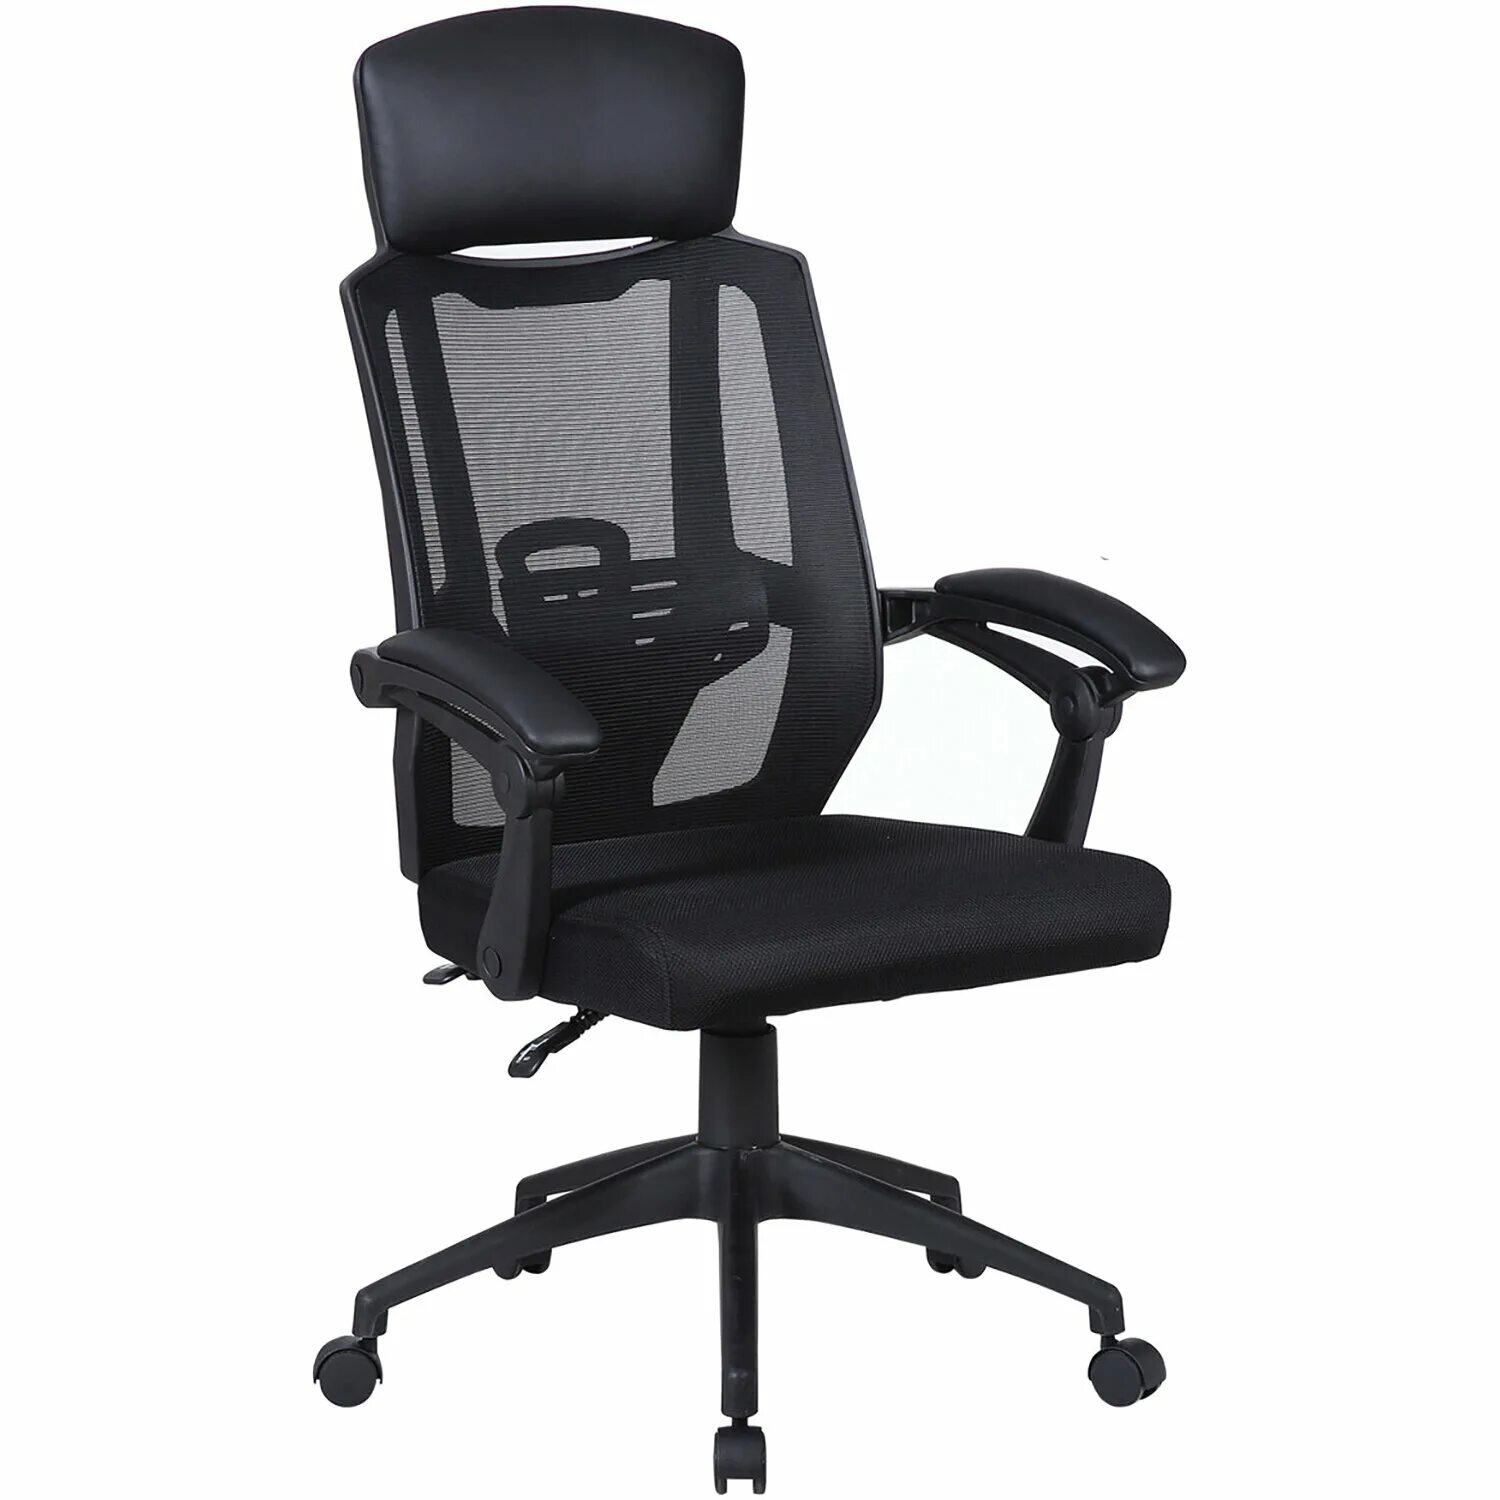 Офисное кресло Brabix Nexus er-401. Кресло офисное БРАБИКС черное сетка. Кресло офисное БРАБИКС черное черное. Кресло офисное Brabix Nexus er-401 Синхромеханизм, подголовник, черное 531835.